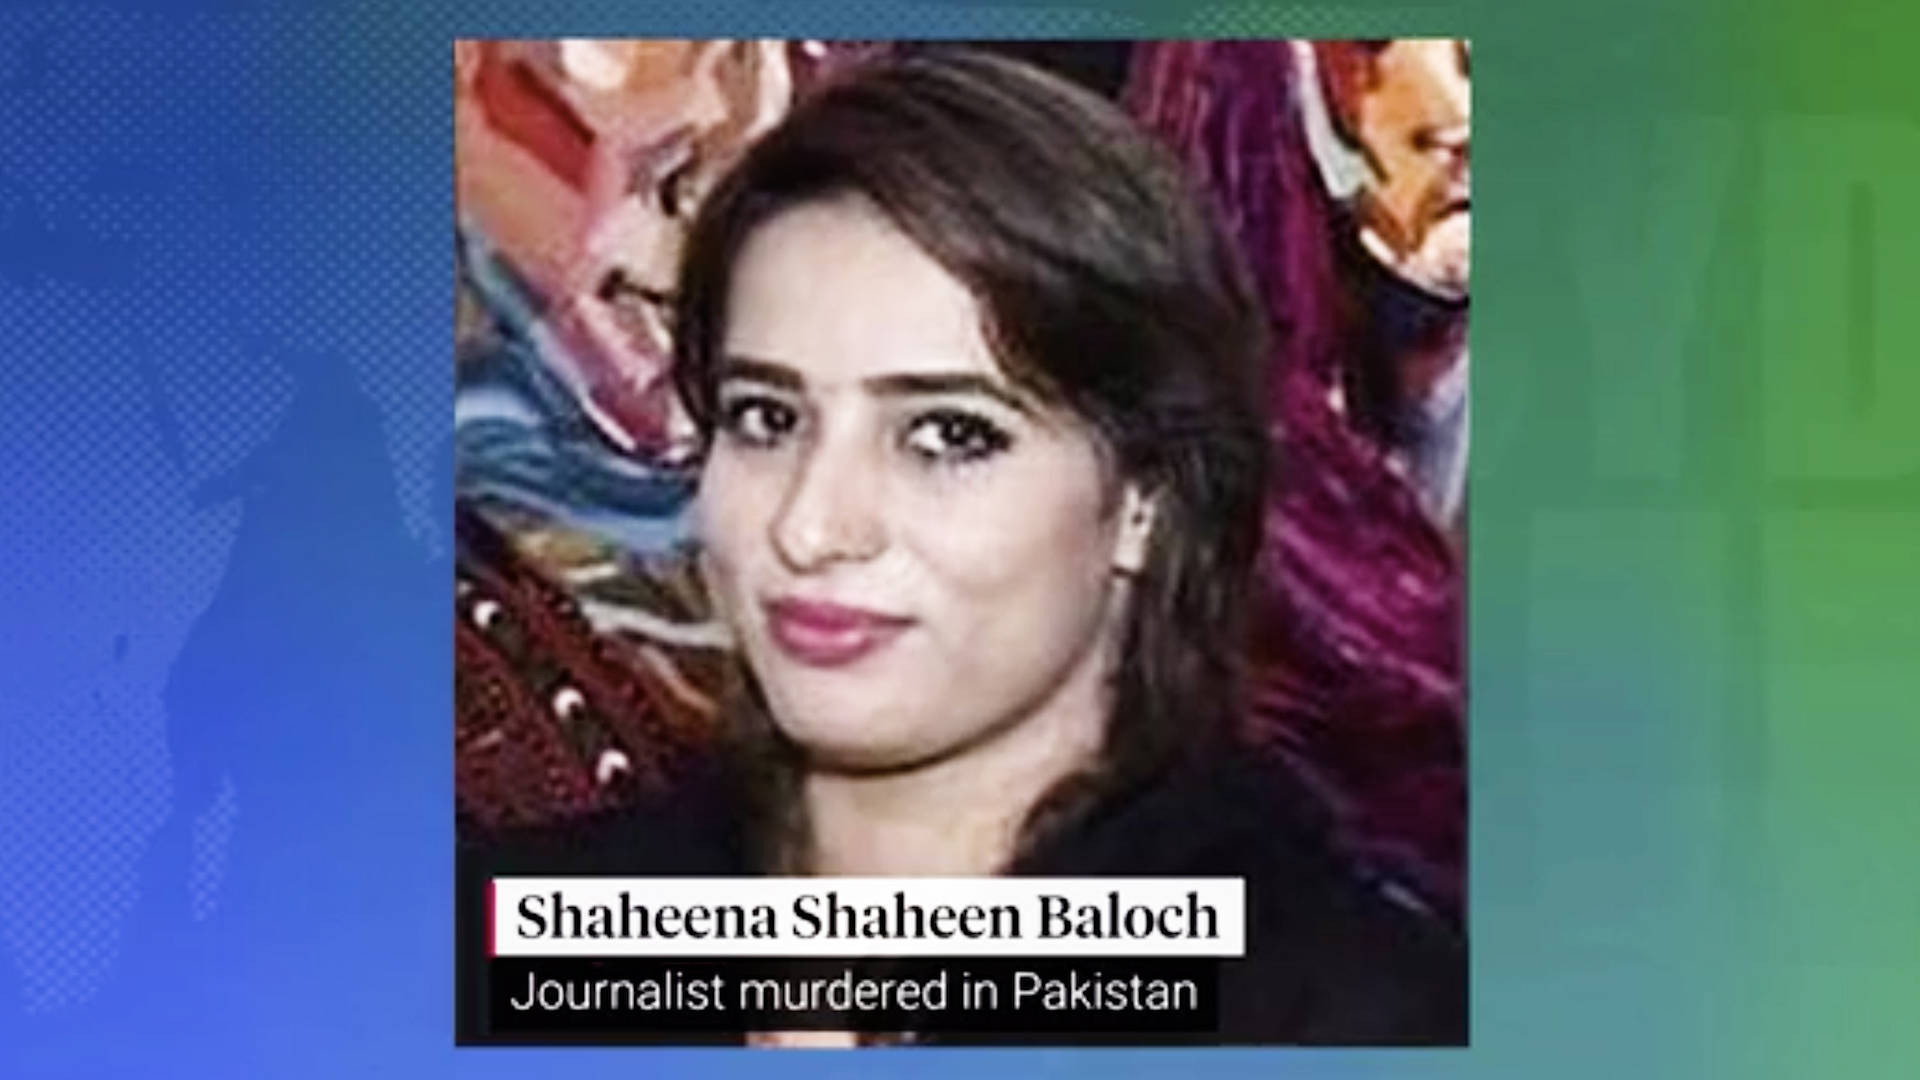 Organizaciones de periodistas demandan justicia para periodista pakistaní  asesinada Shaheena Shaheen Baloch | Democracy Now!